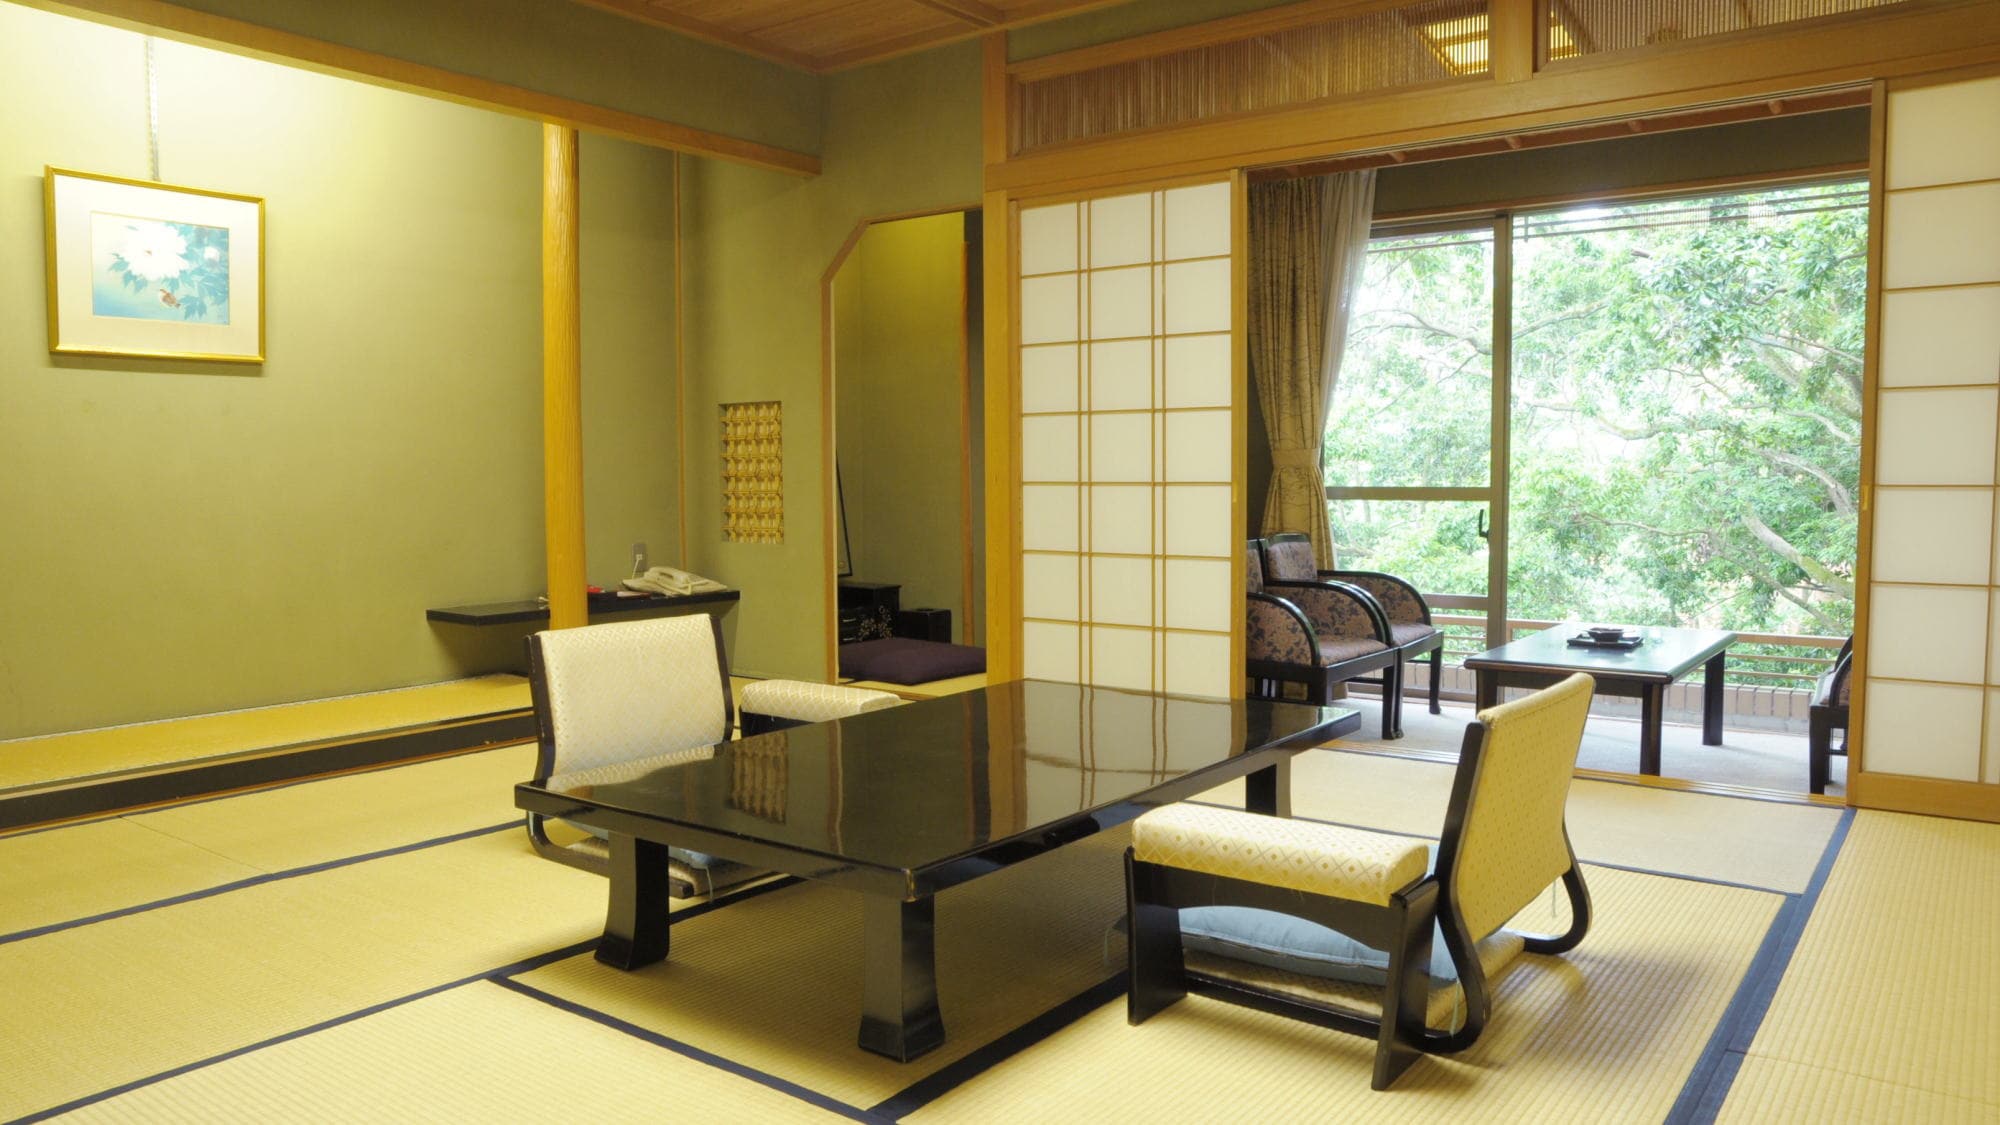 <Kawasuien> ห้องพิเศษชั้น 5 ห้องสไตล์ญี่ปุ่นที่มี 12 เสื่อทาทามิขึ้นไป